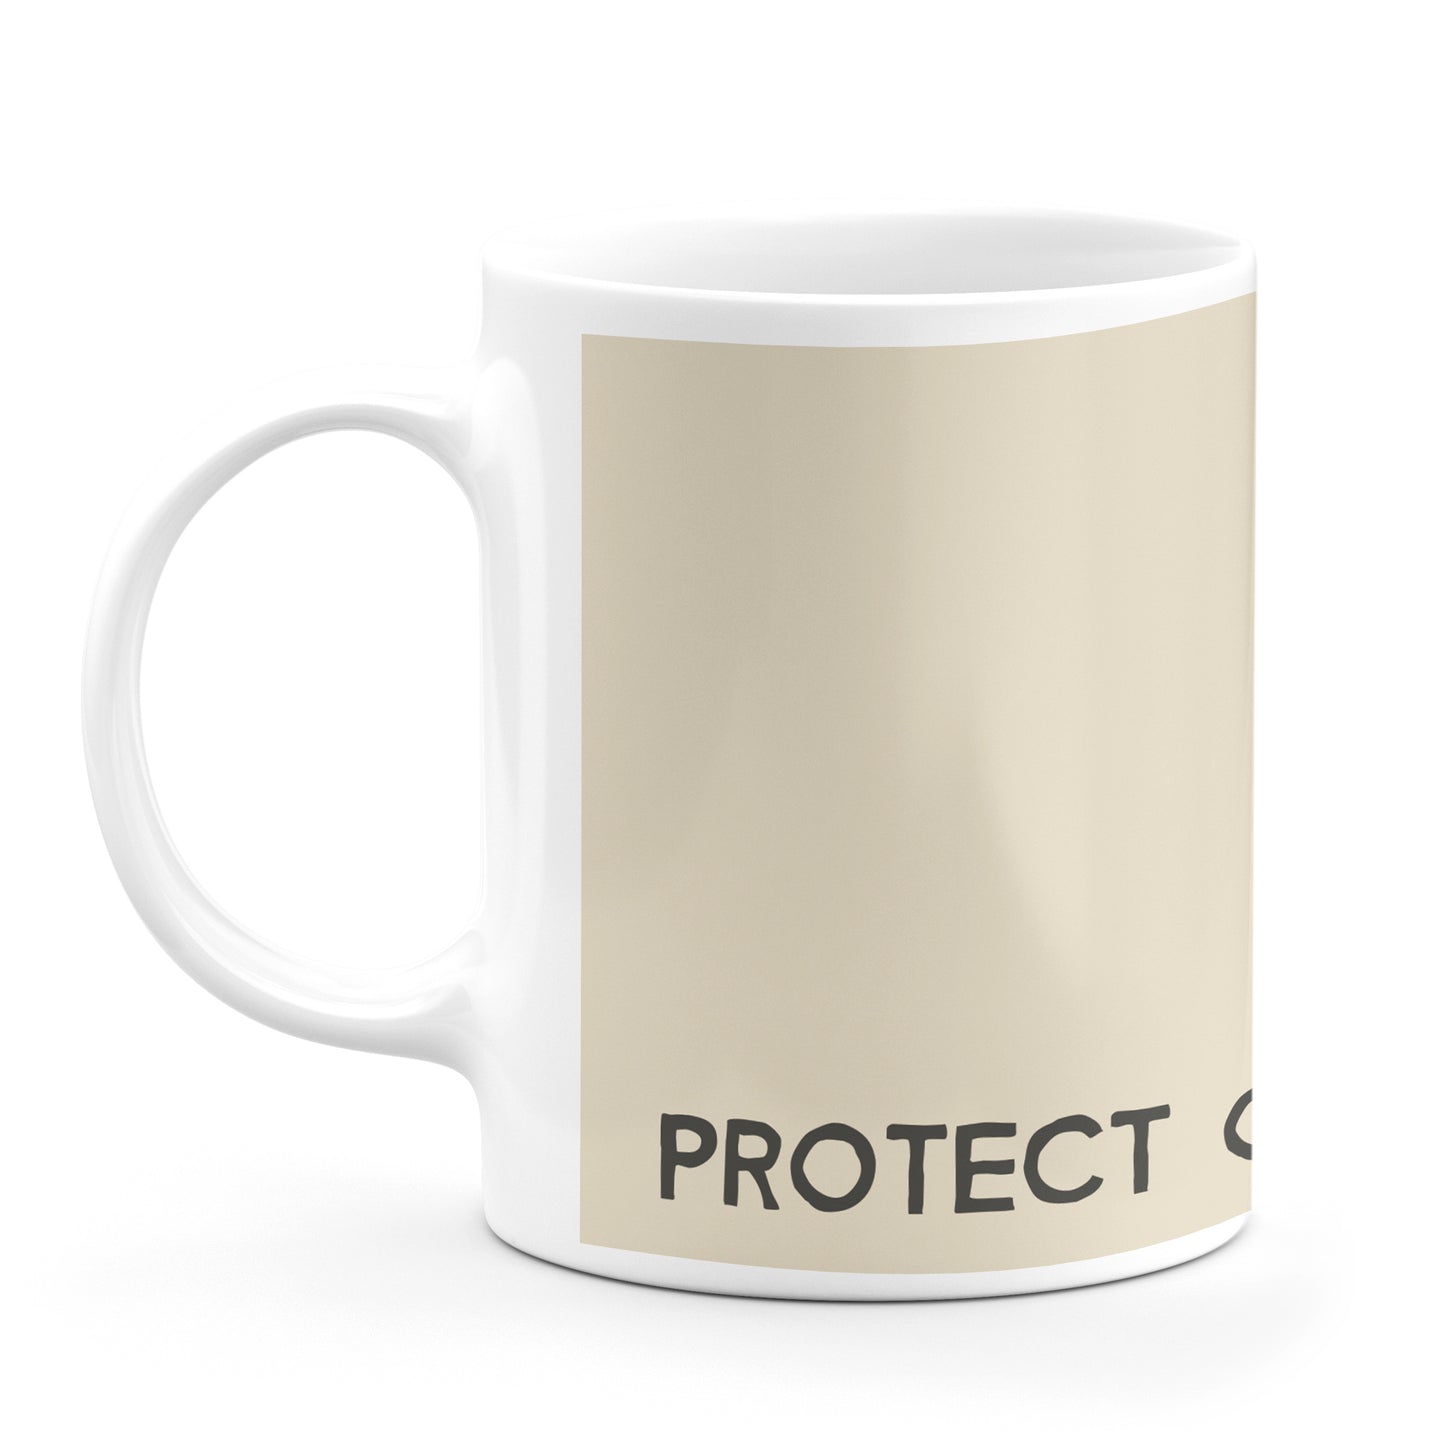 Protect Our Coastal Treasures Ceramic Mug